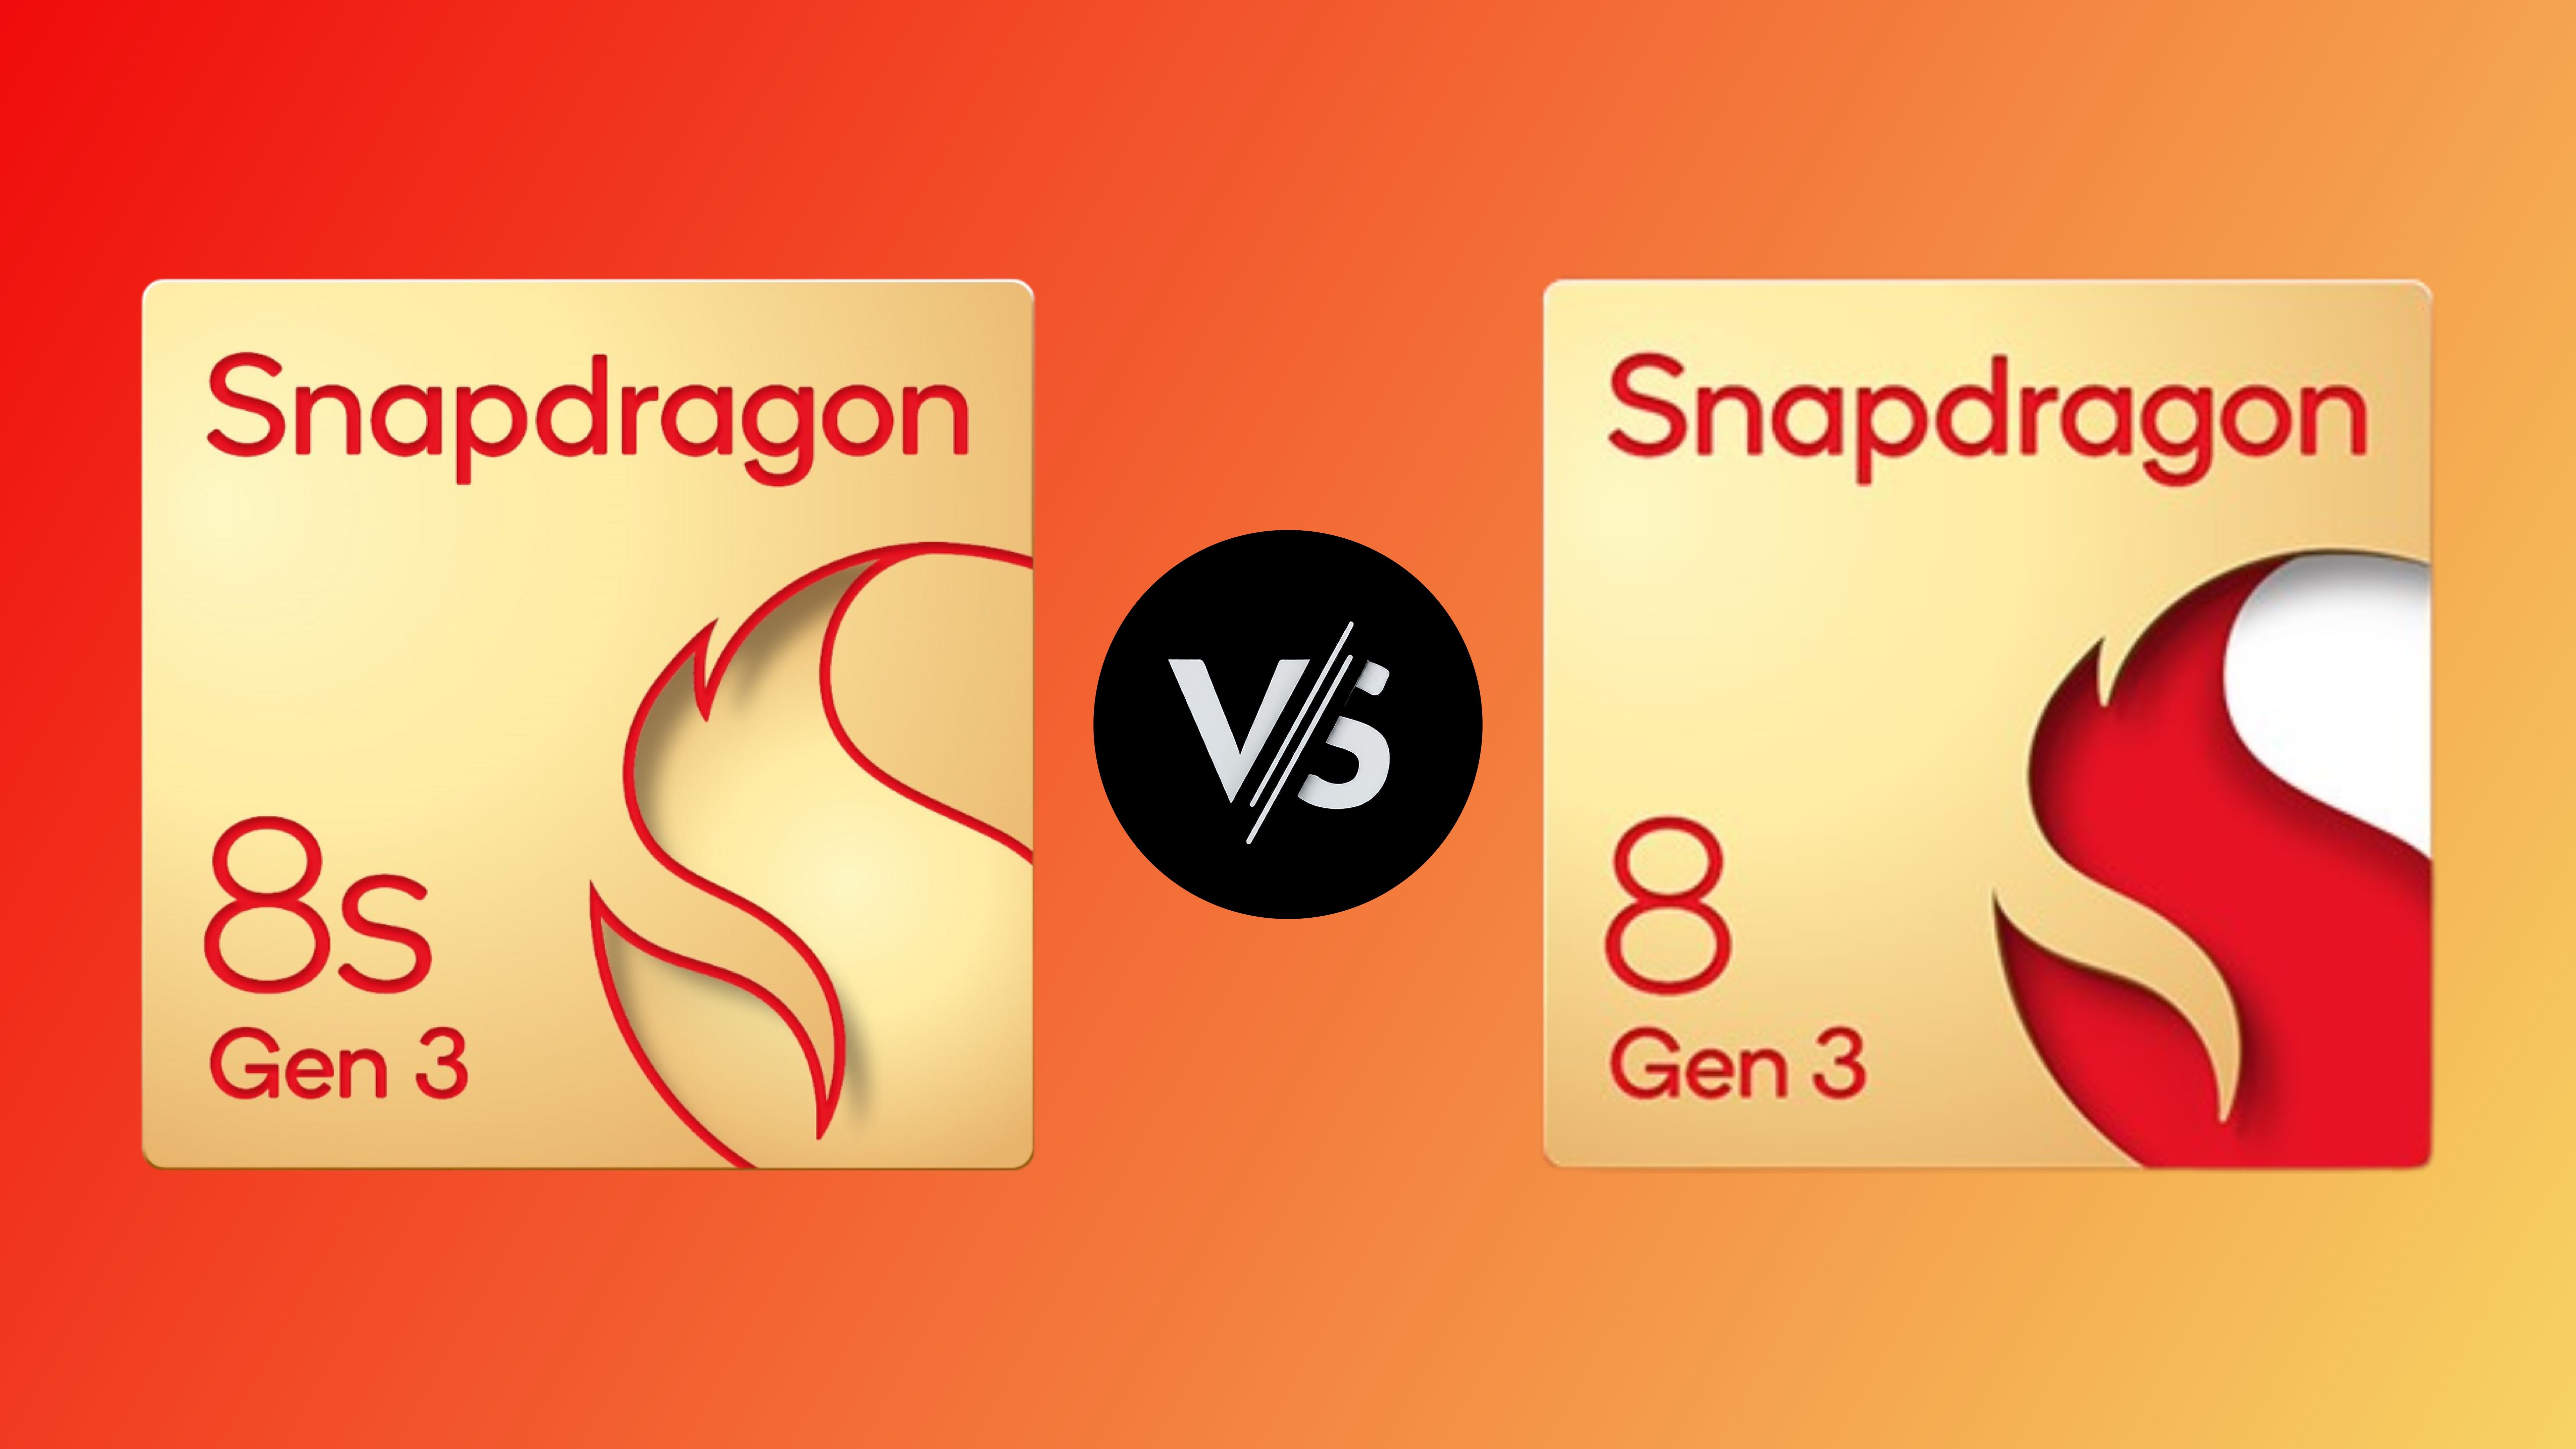 Snapdragon 8s Gen 3 vs Snapdragon 8 Gen 3 leader image